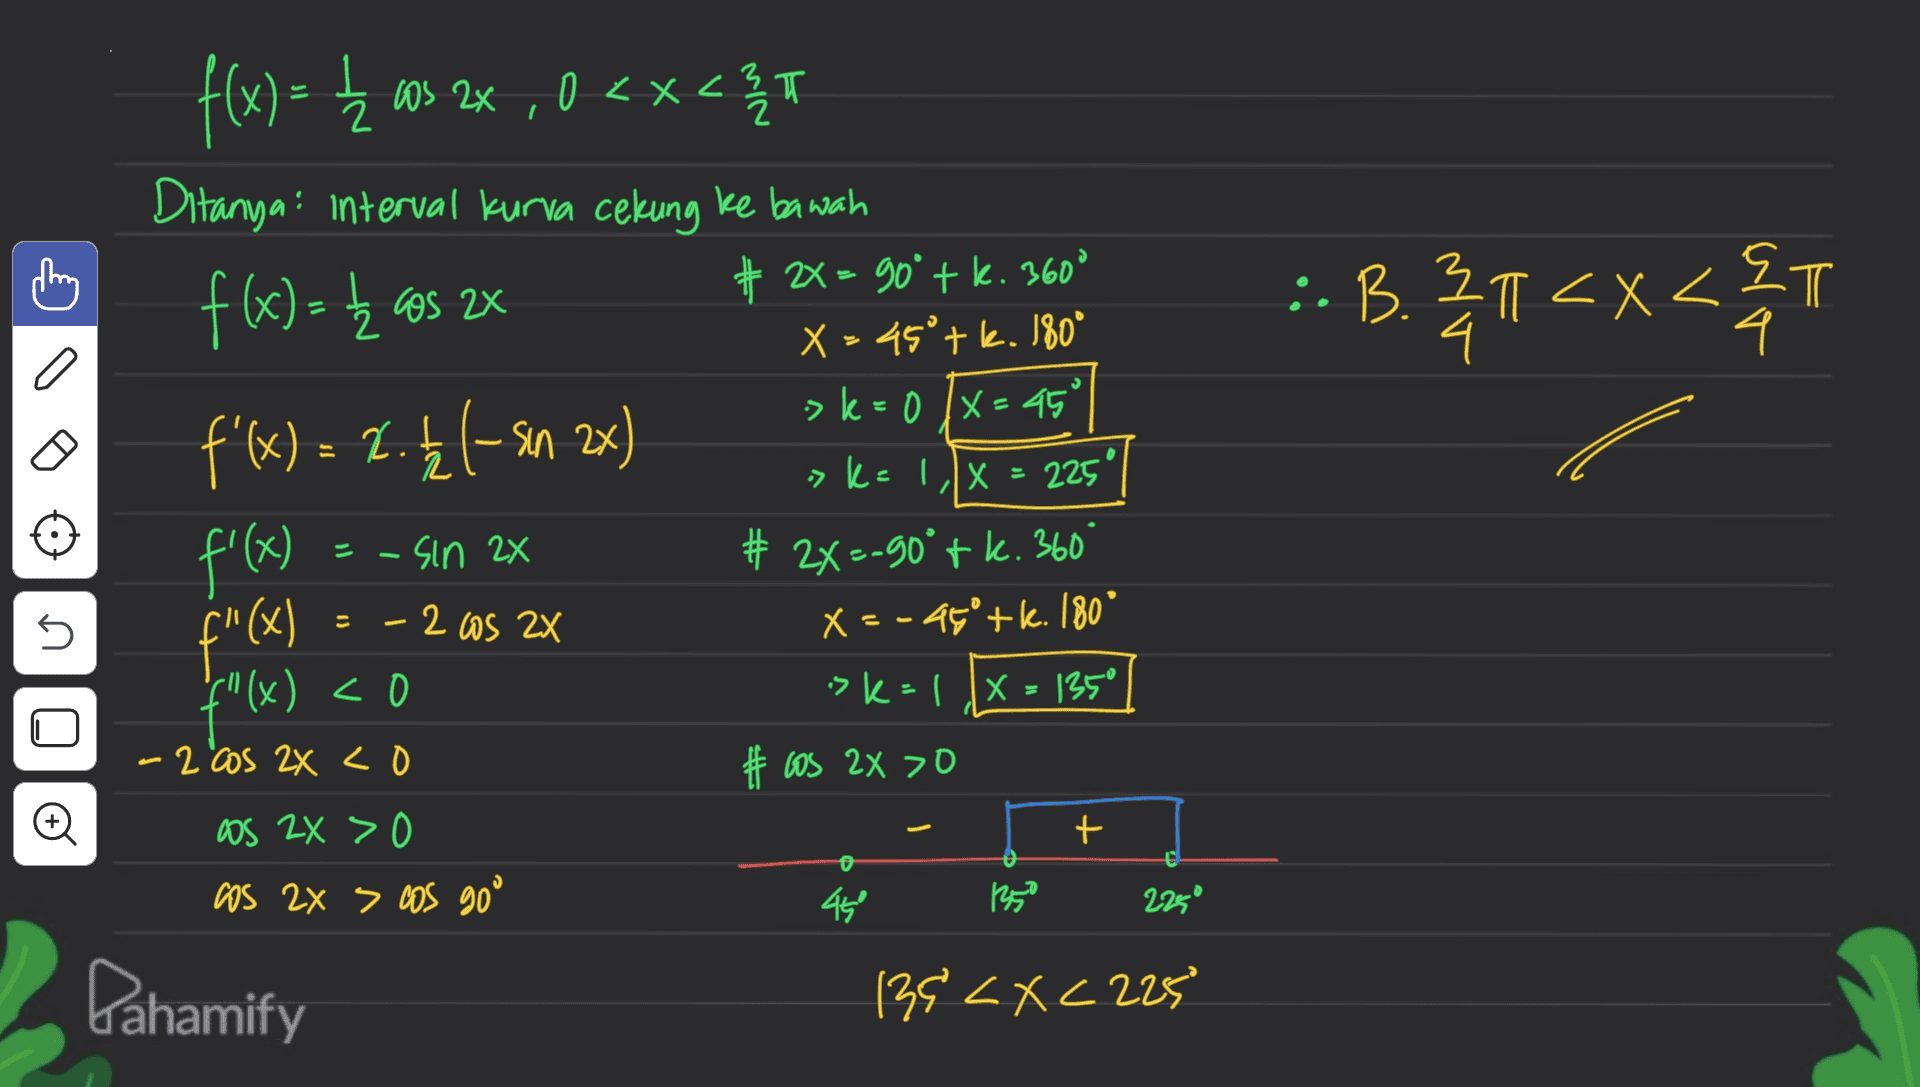 돌 :. B. 21<x<T <ST 4 S 1 f(x) = { 03.2x , 0<x<t (x) = <x<3 T Ditanya" interval kurva cekung ke bawah f(x) = ₂ cos zx # 2 = 90° + k. 360° 2 X > 45° + k. 180° >k=0 /x=45° f'(x) = 2.12 (sin 2x) ) »k=1/x = 225° f'(x) = -sin 2x # 2X=-90°tk. 360° = - 2005 2x x = -45°+k. 180° f"(x) <0 x sk=1 X=135° -2 cos 2X co #los 2x >0 as ZX > os 2x > cos goo 45 1350 139 <x<225 X U f"(x) 2 cos ZX U o + 225° Pahamify 